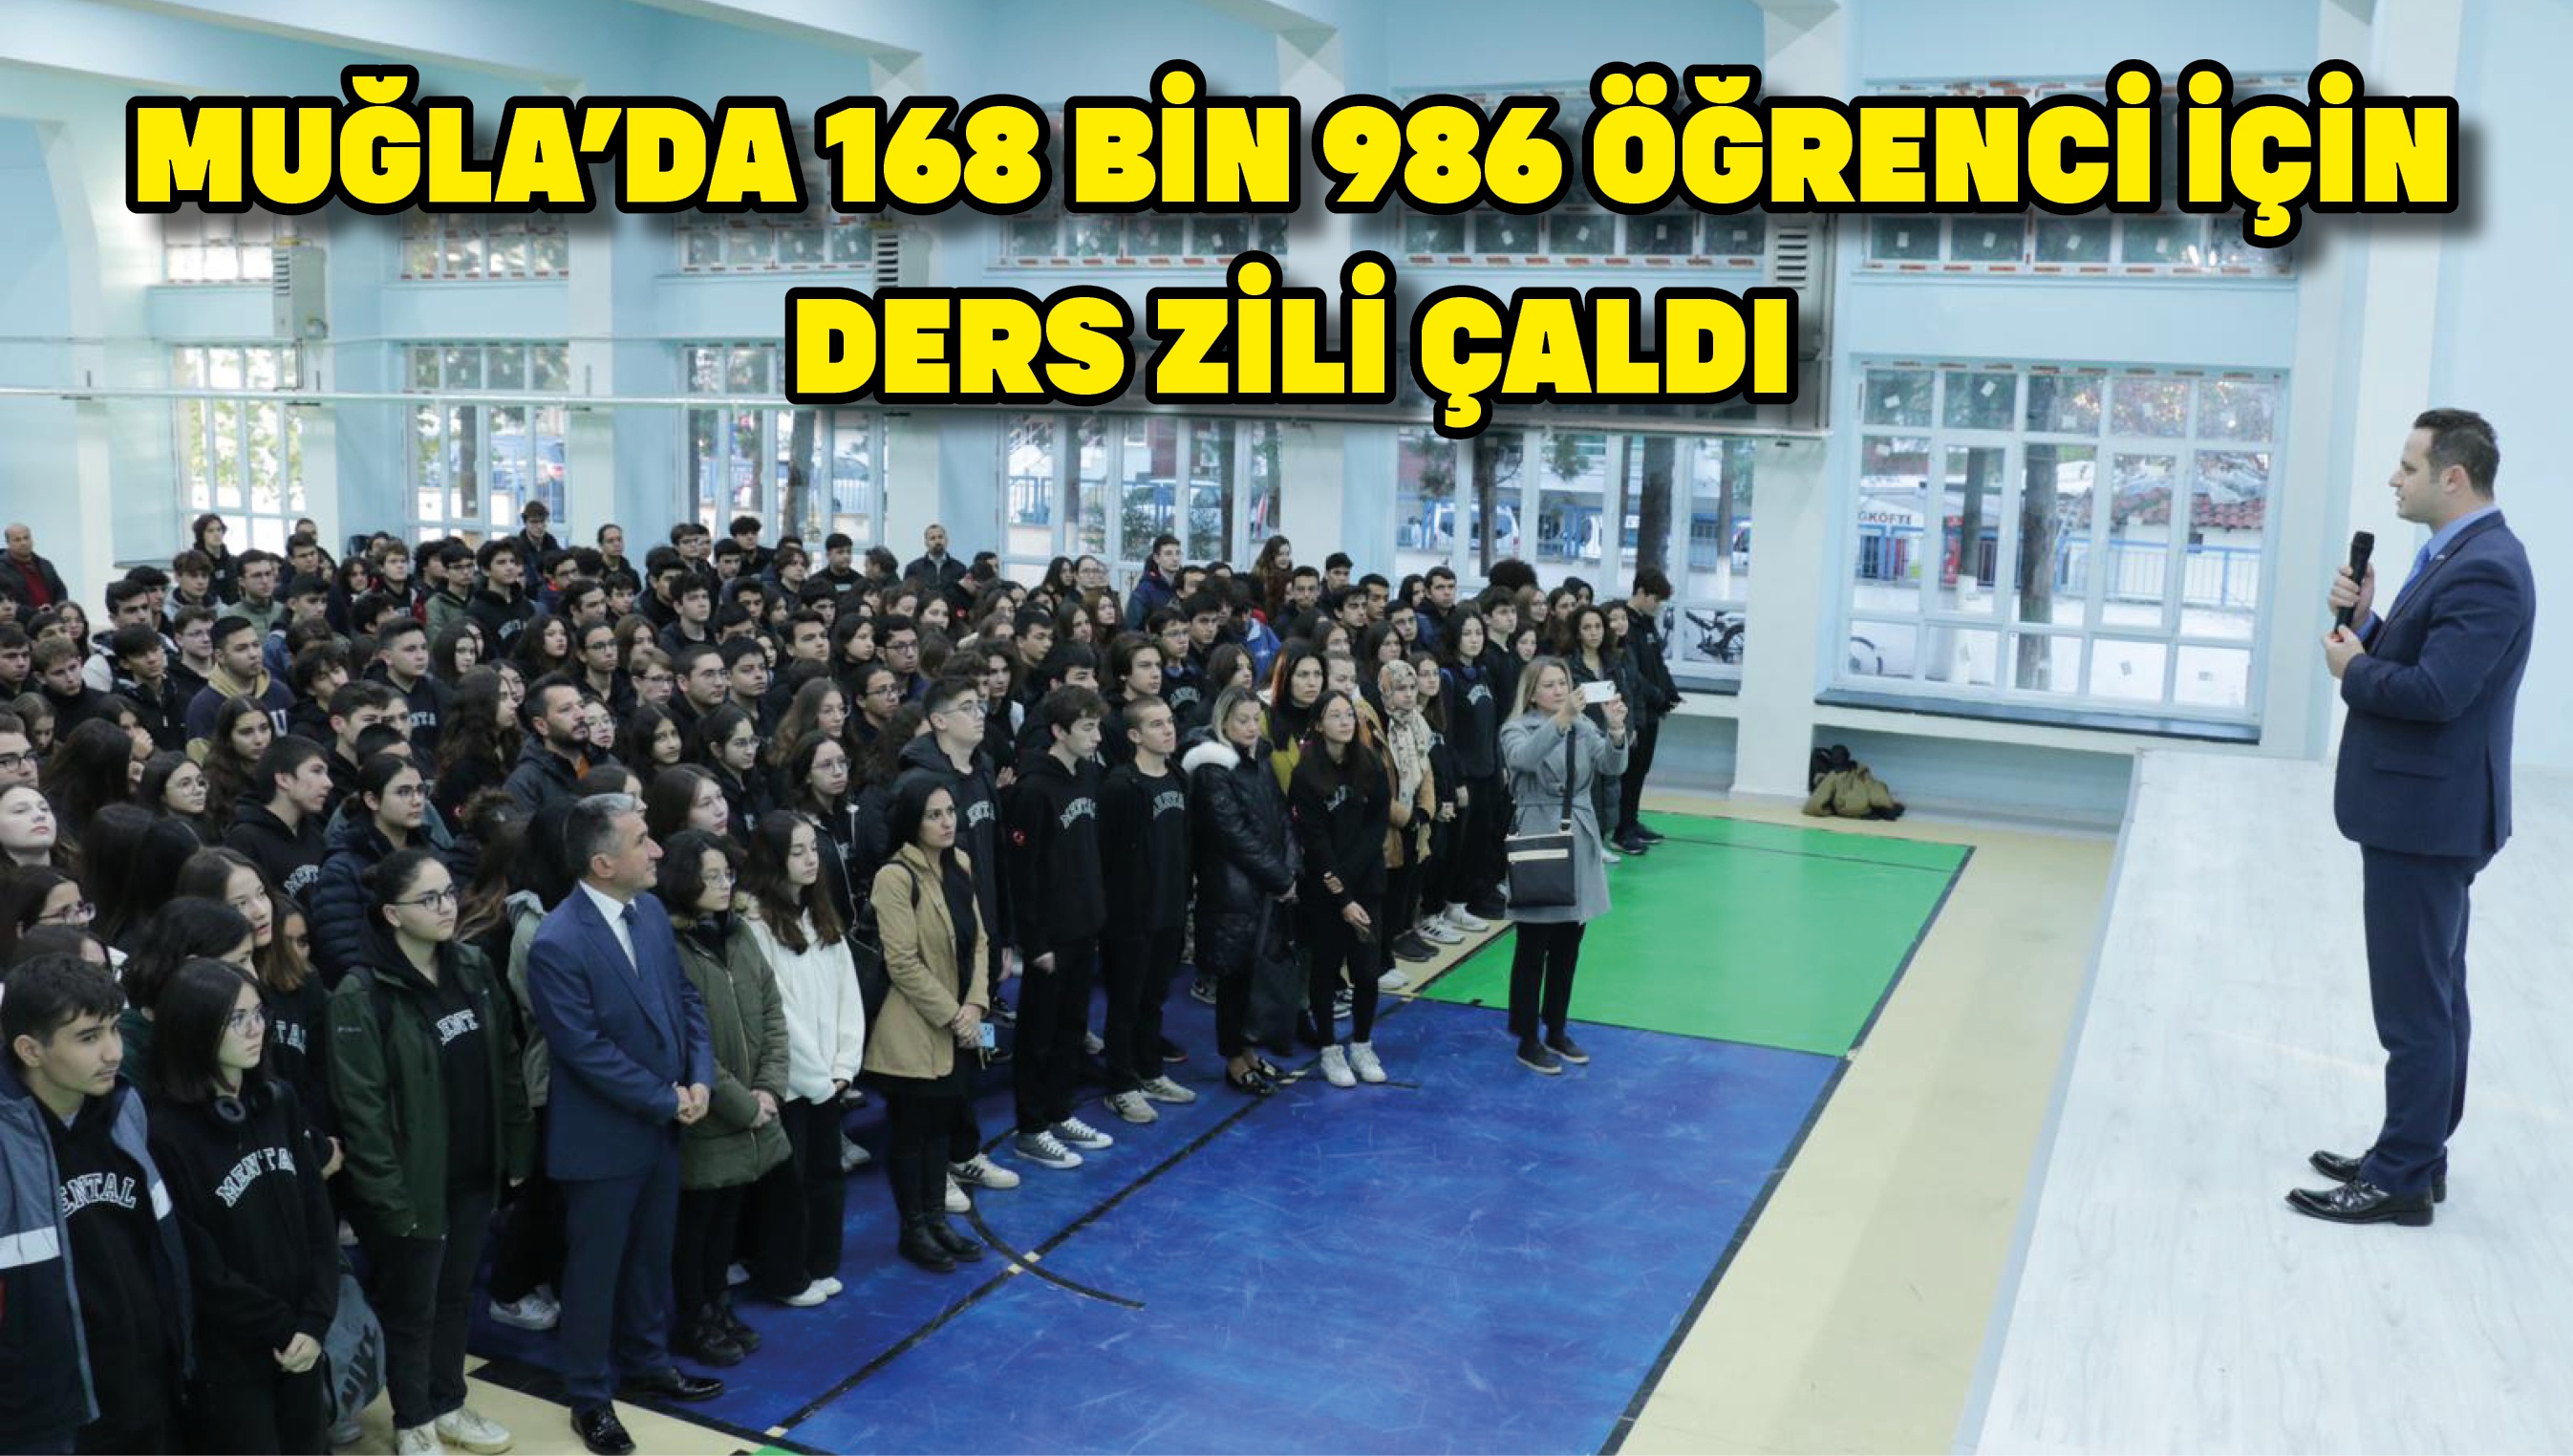 Muğla’da 168 bin 986 öğrenci için ders zili çaldı